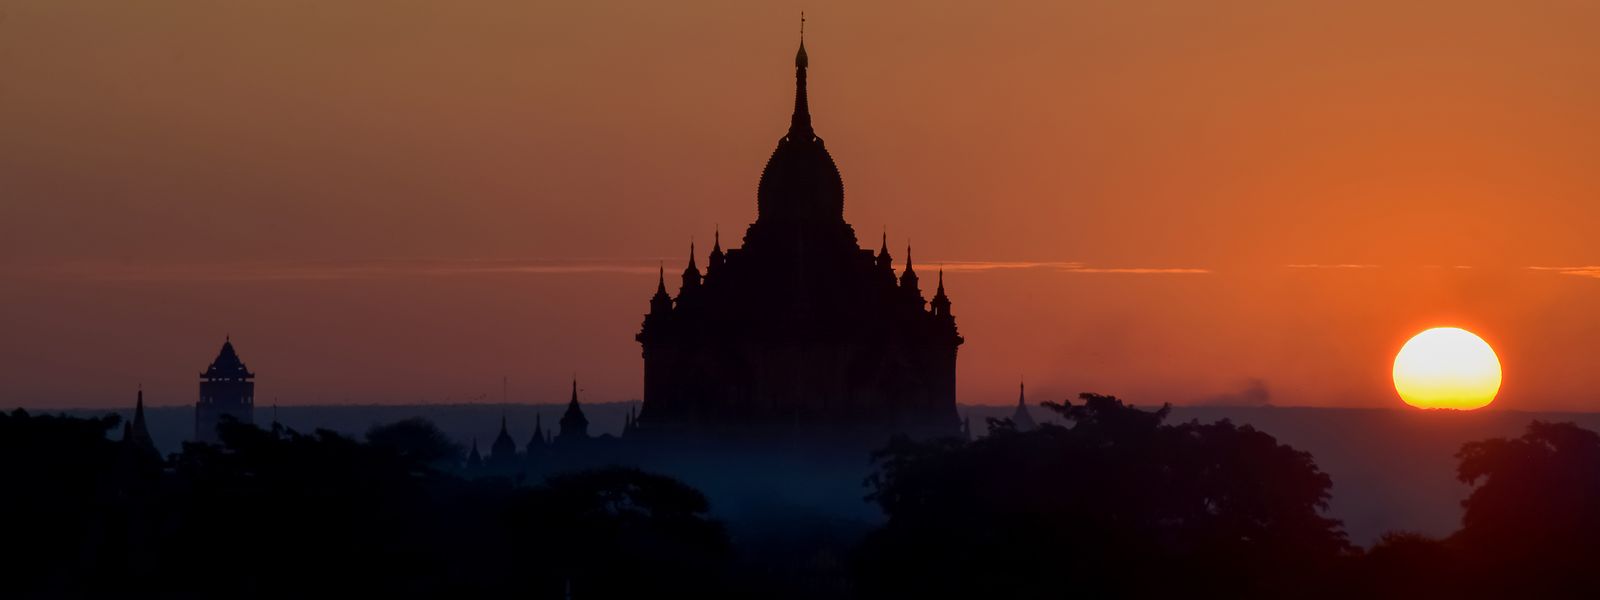 Der Htilominlo-Tempel in Bagan bei Sonnenuntergang. Die Welterbestätte gilt als eine der wichtigsten Tempelanlagen in ganz Südostasien. 